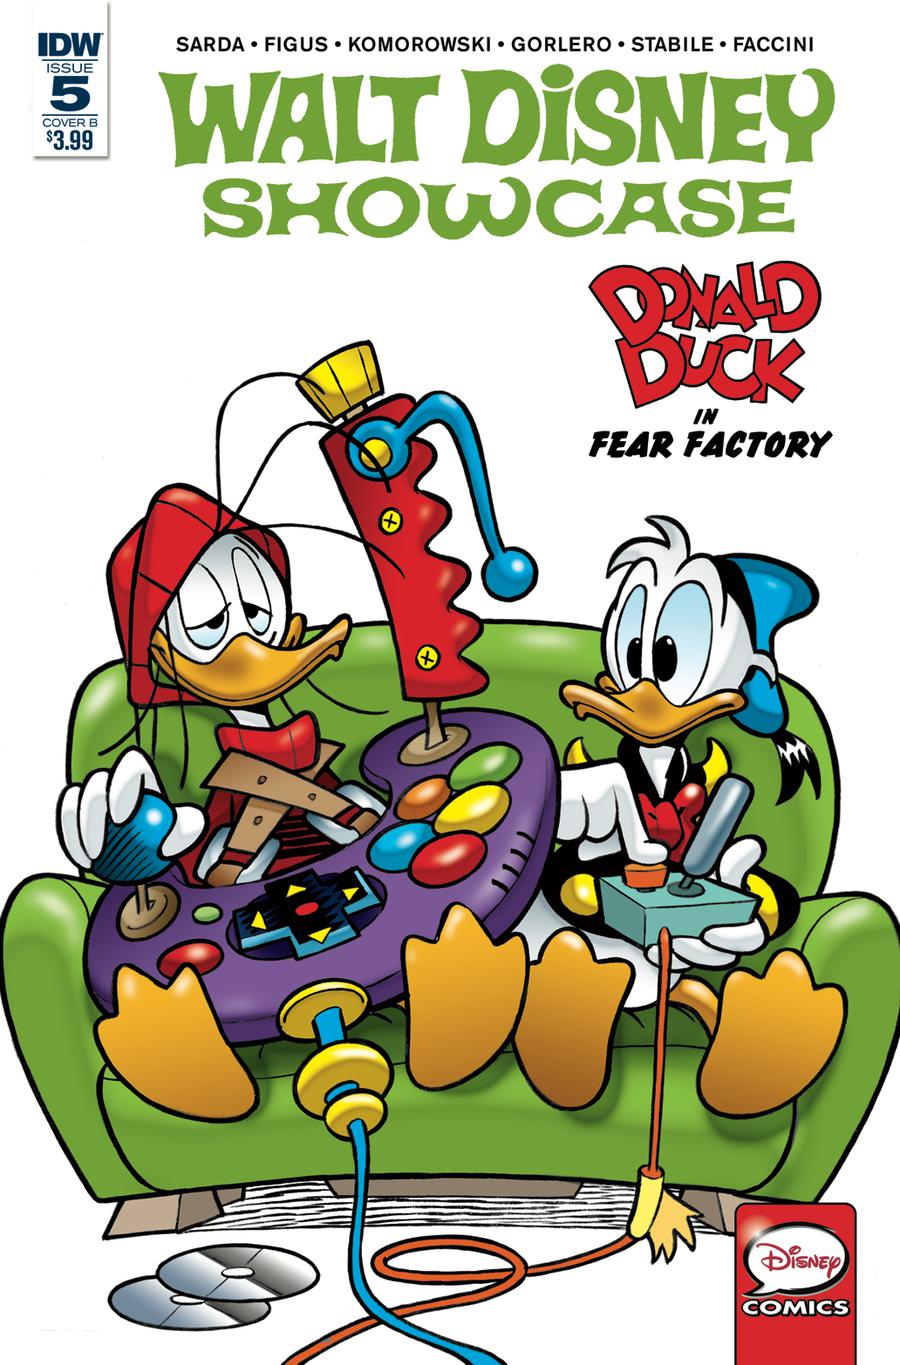 Walt Disney Showcase Vol 2 #5 Donald Duck Family Cover B Variant Andrea Freccero Cover